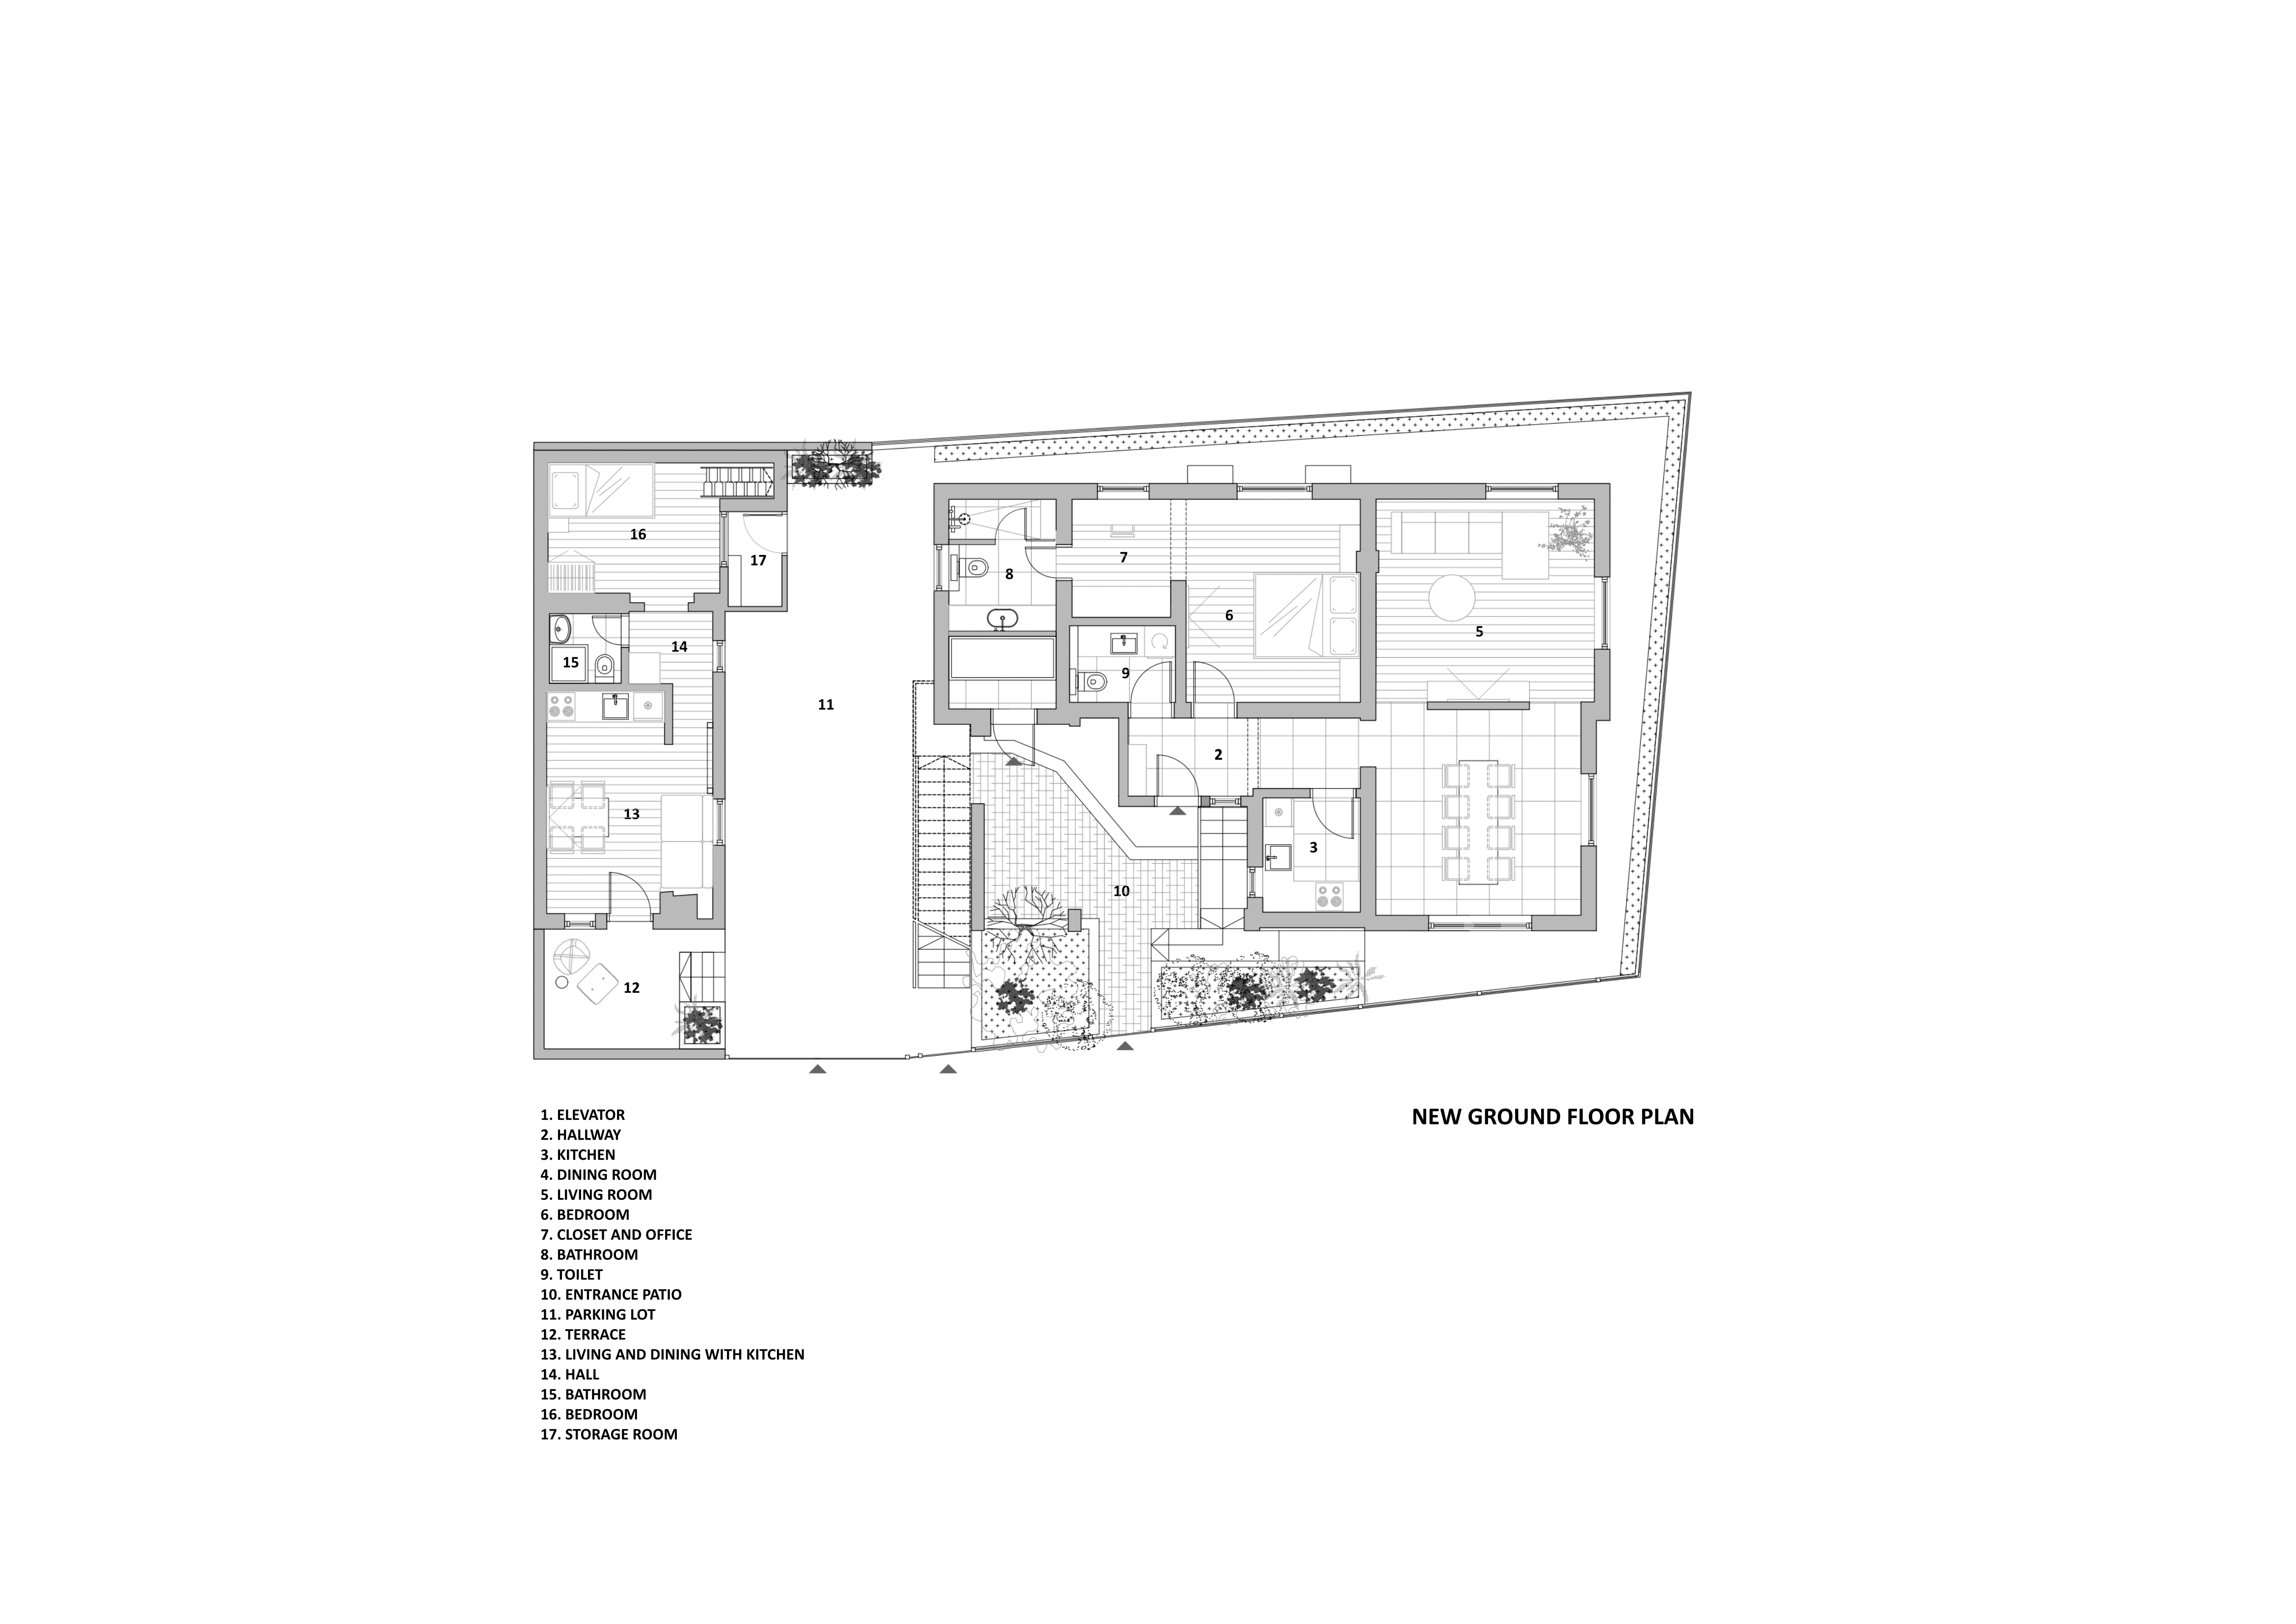 jdj-family-house-new-ground-floor-plan